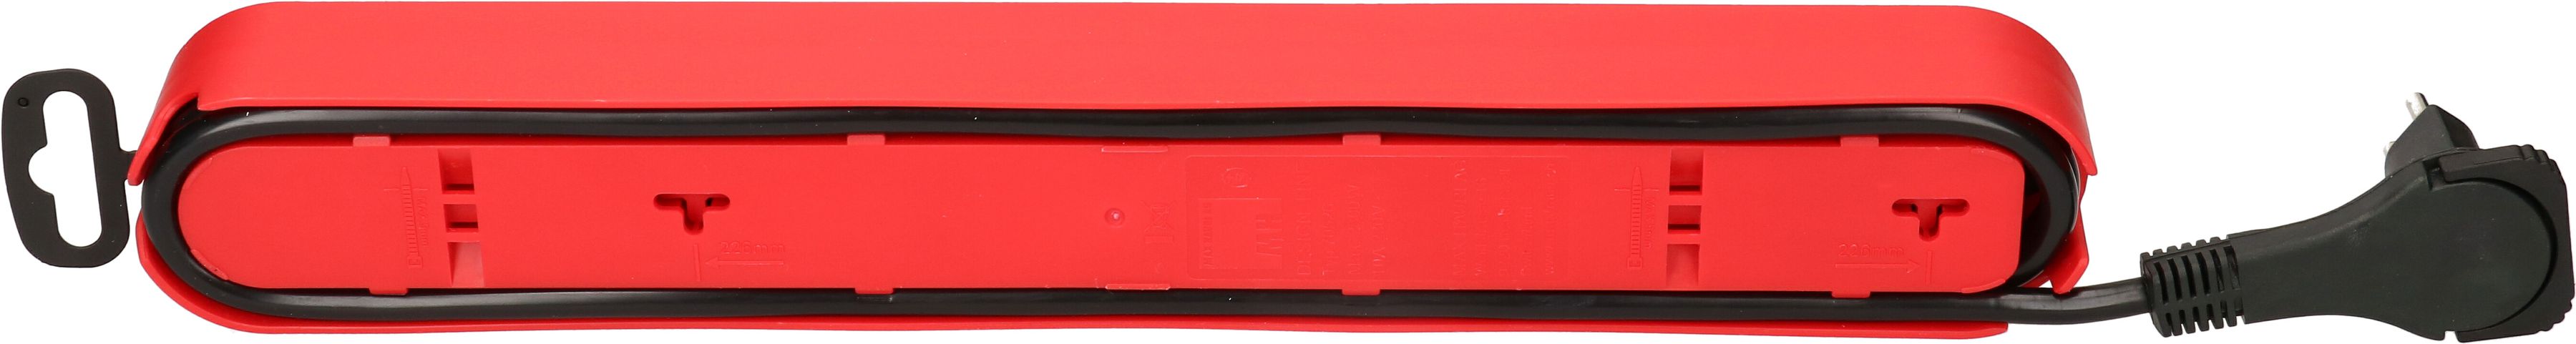 multipresa Design Line 6x tipo 13 rosso/nero interr. 2.2m piatto